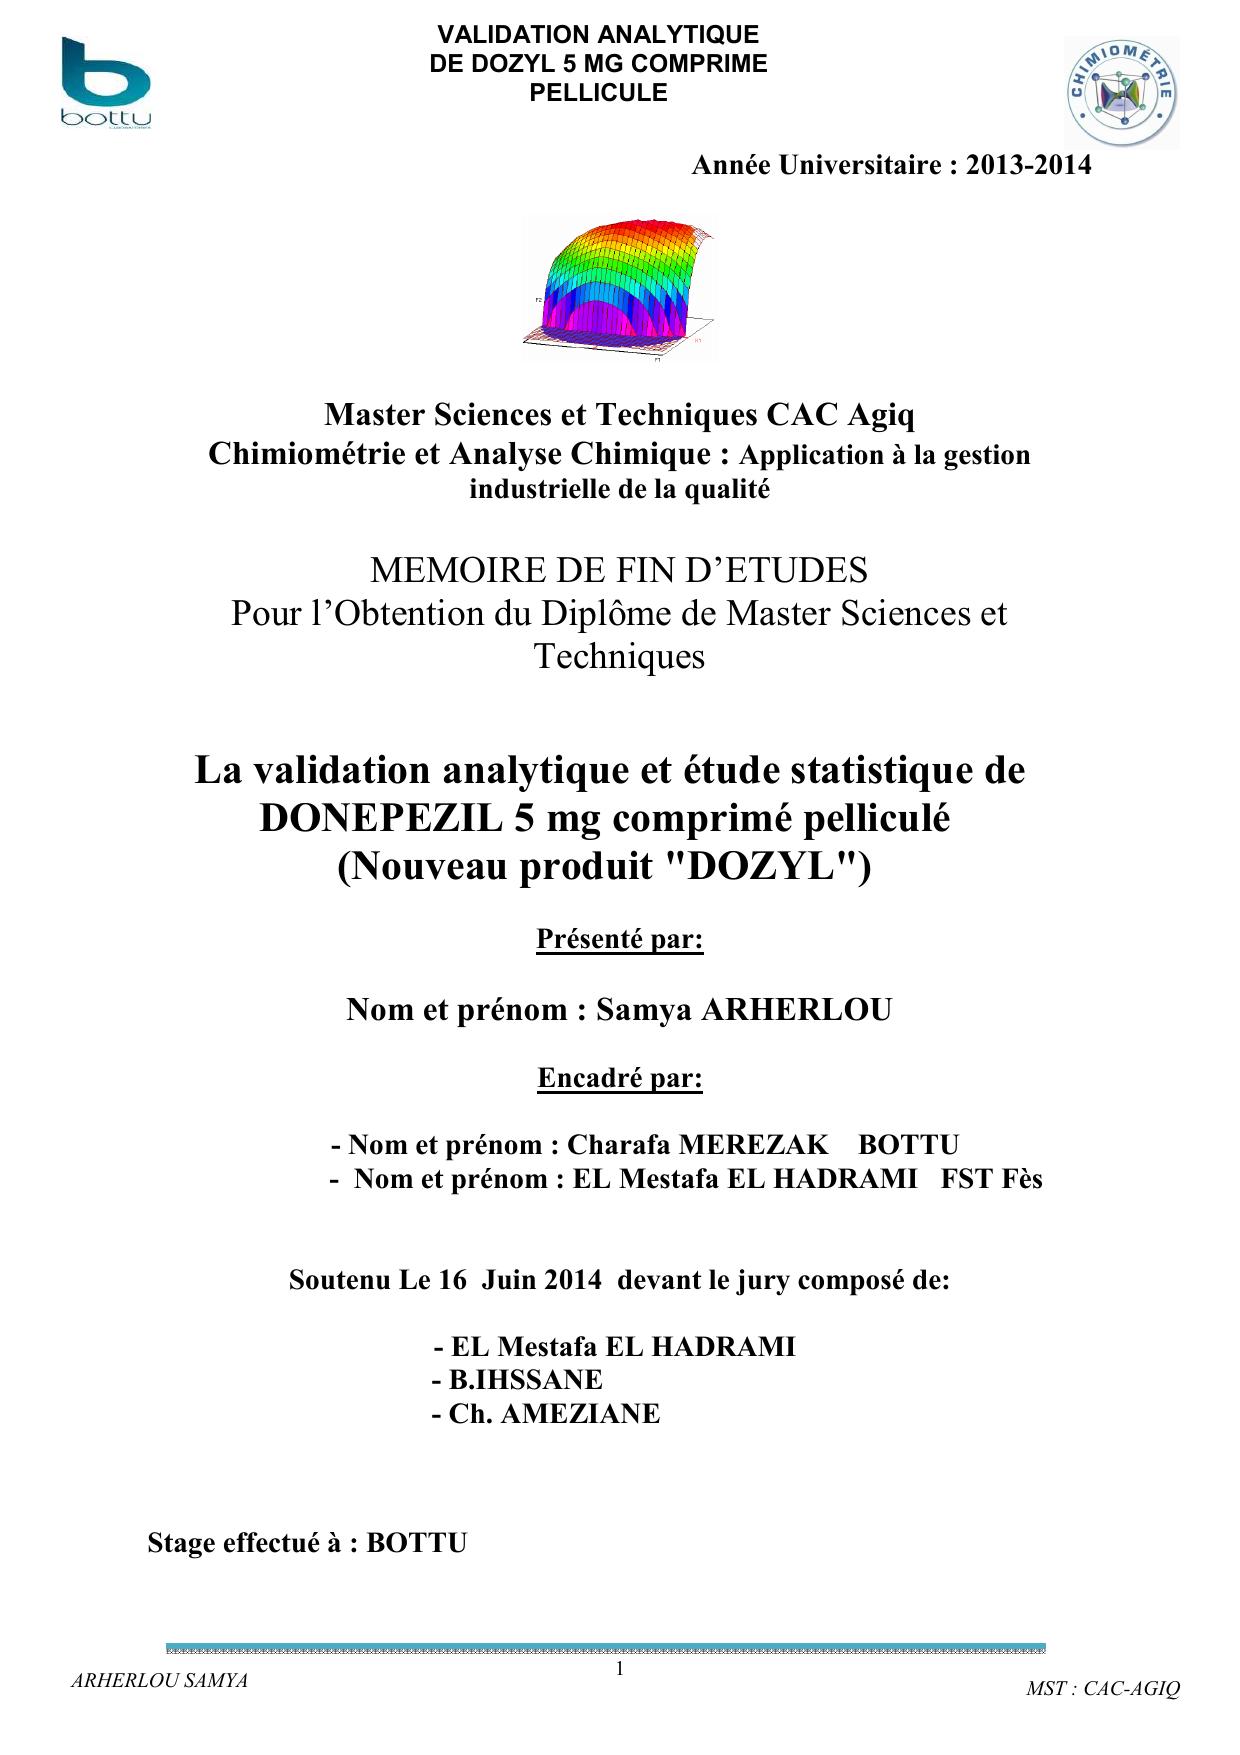 La validation analytique et étude statistique de DONEPEZIL 5 mg comprimé pelliculé (Nouveau produit "DOZYL")